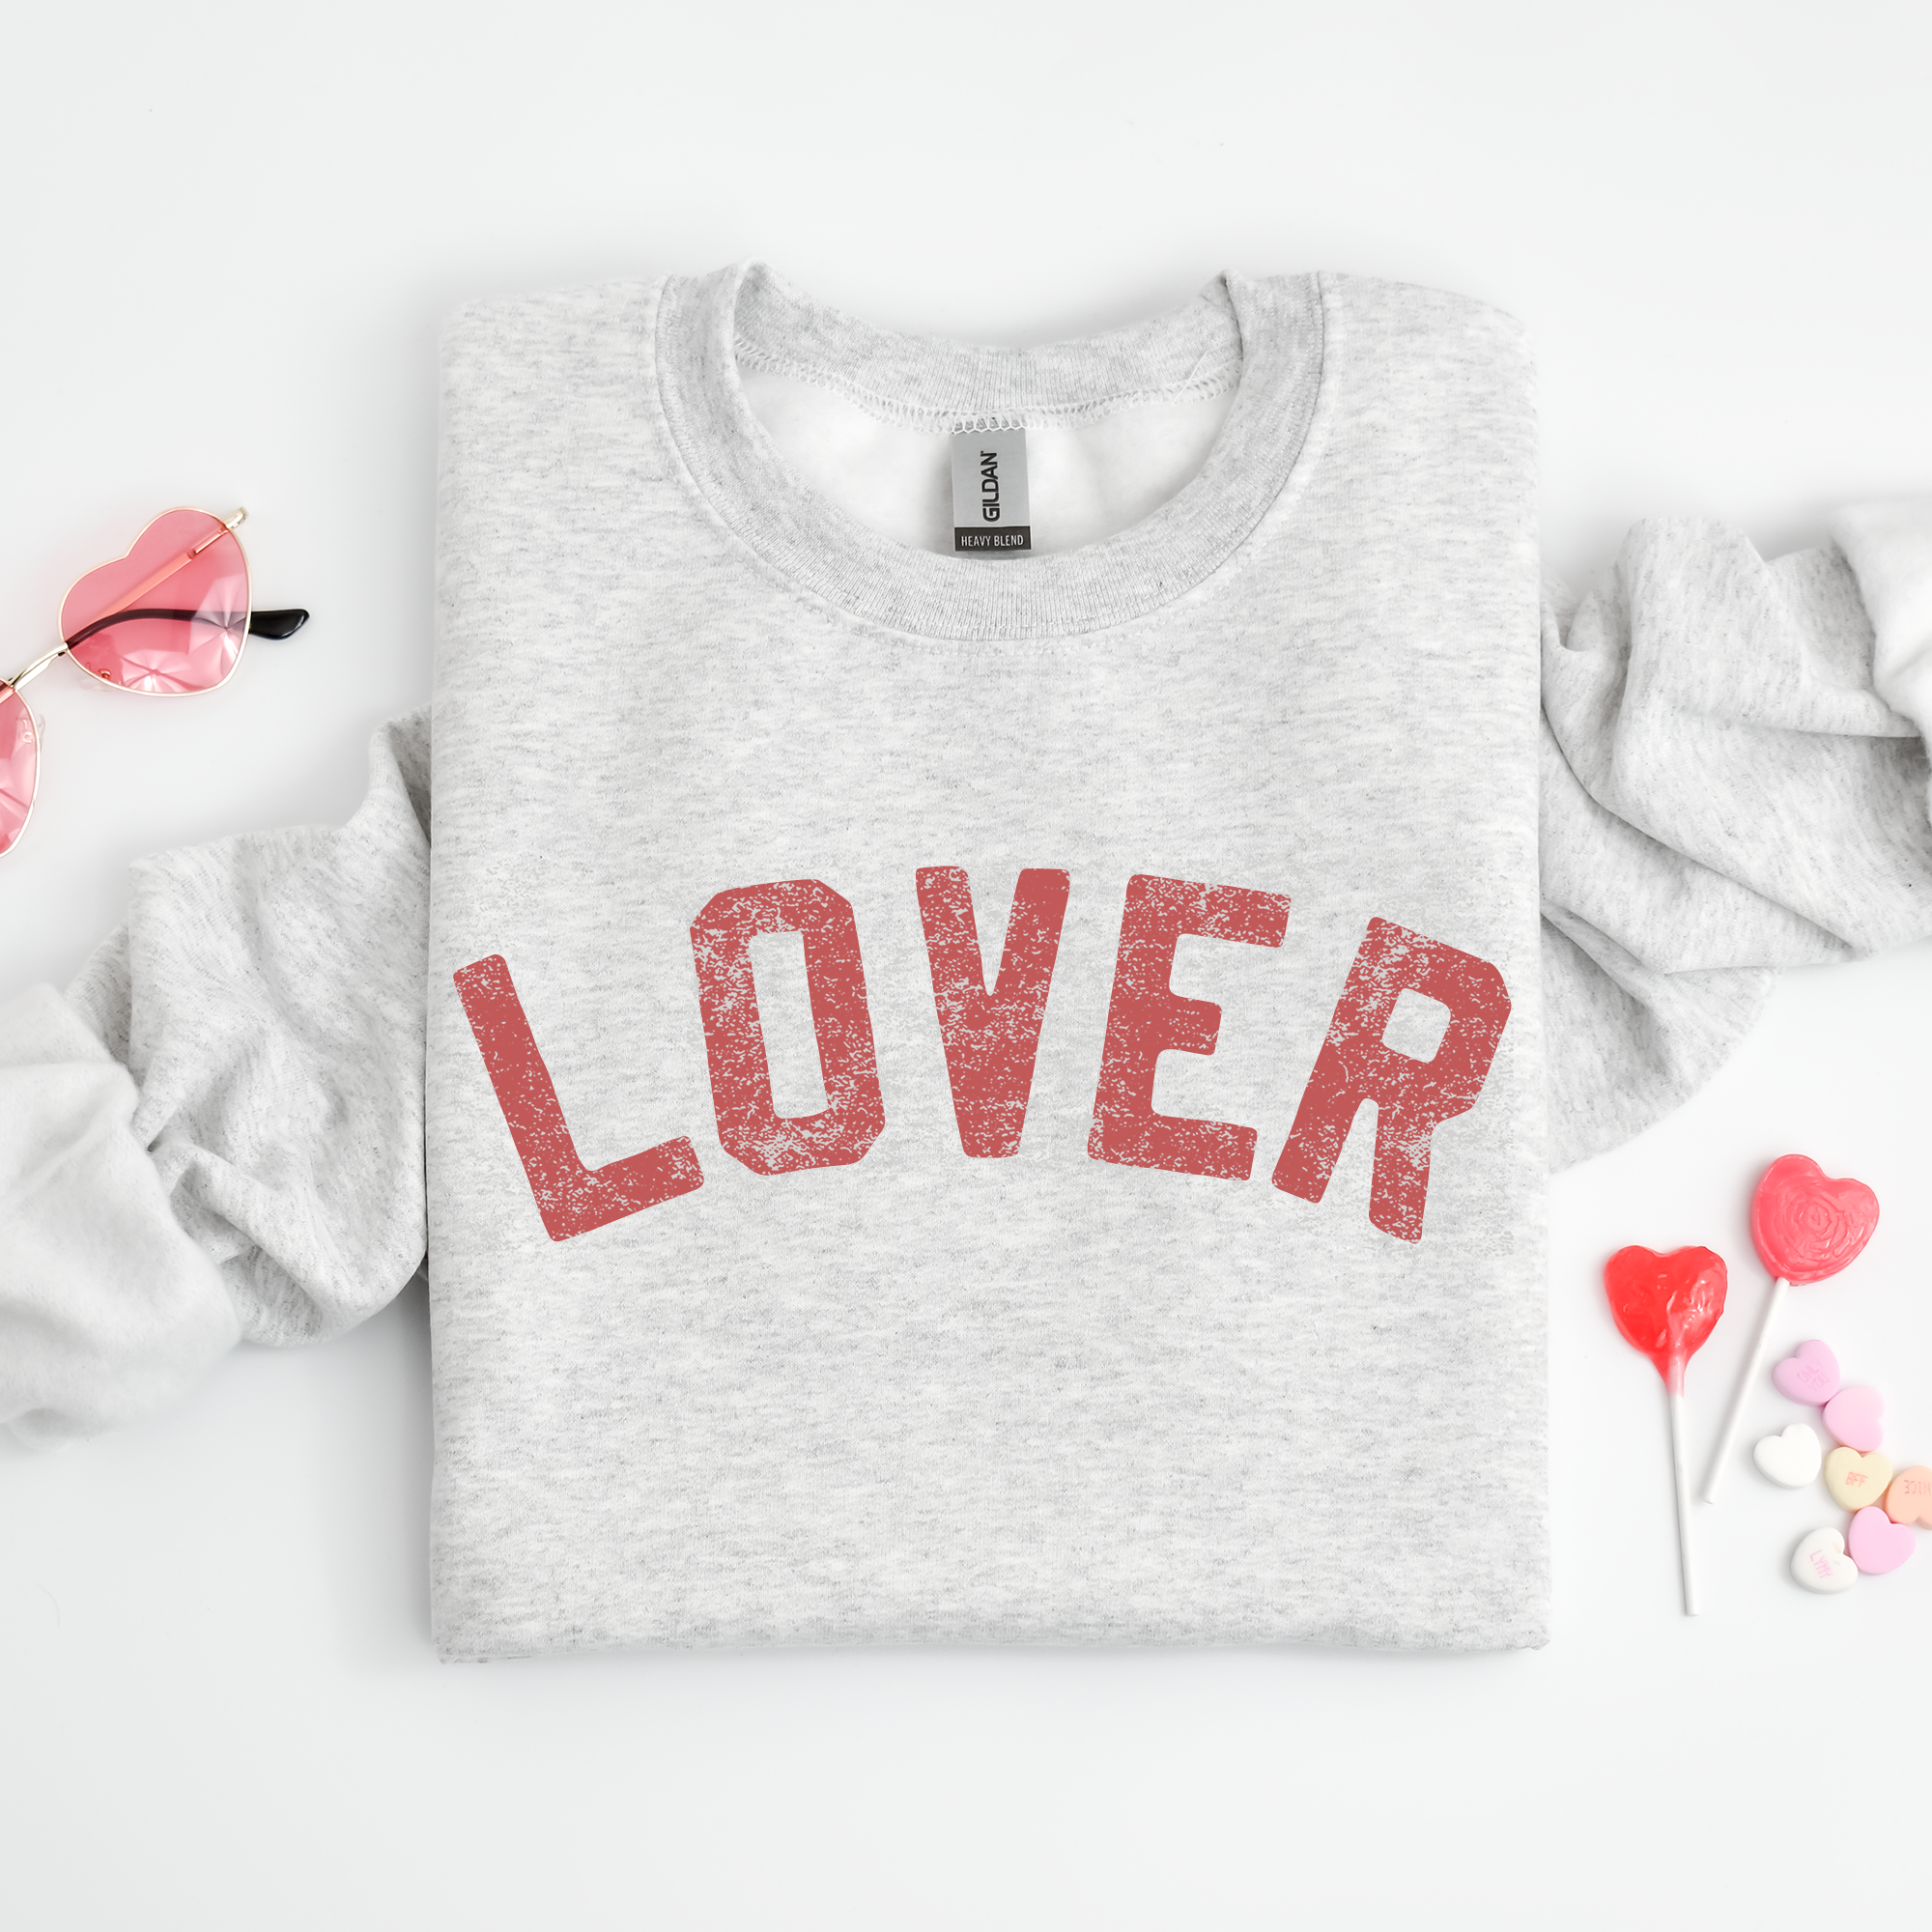 Lover Crewneck Sweatshirt, Valentine's Day Shirt